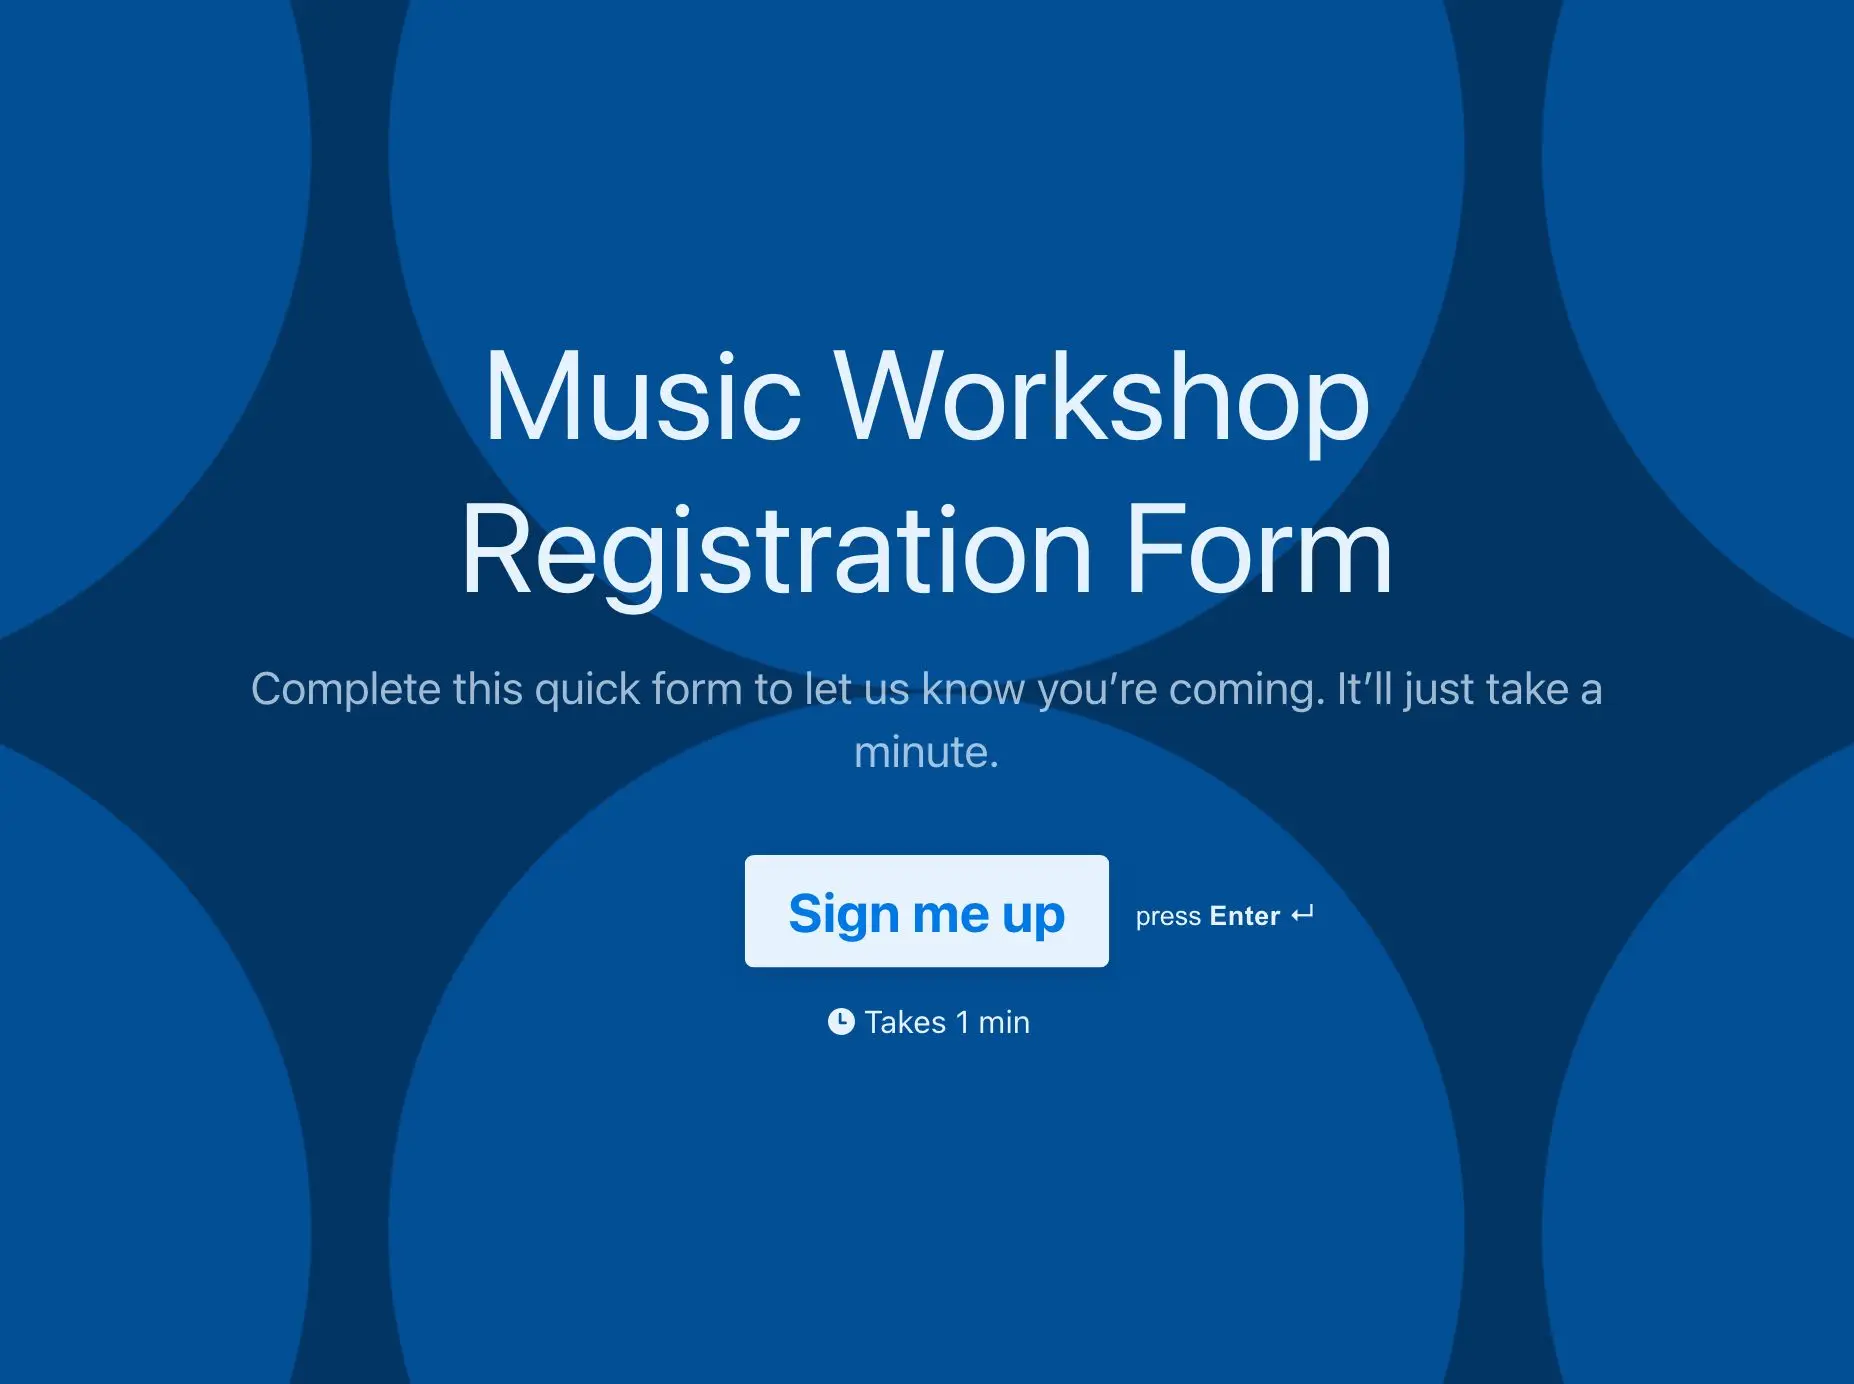 Music Workshop Registration Form Template Hero